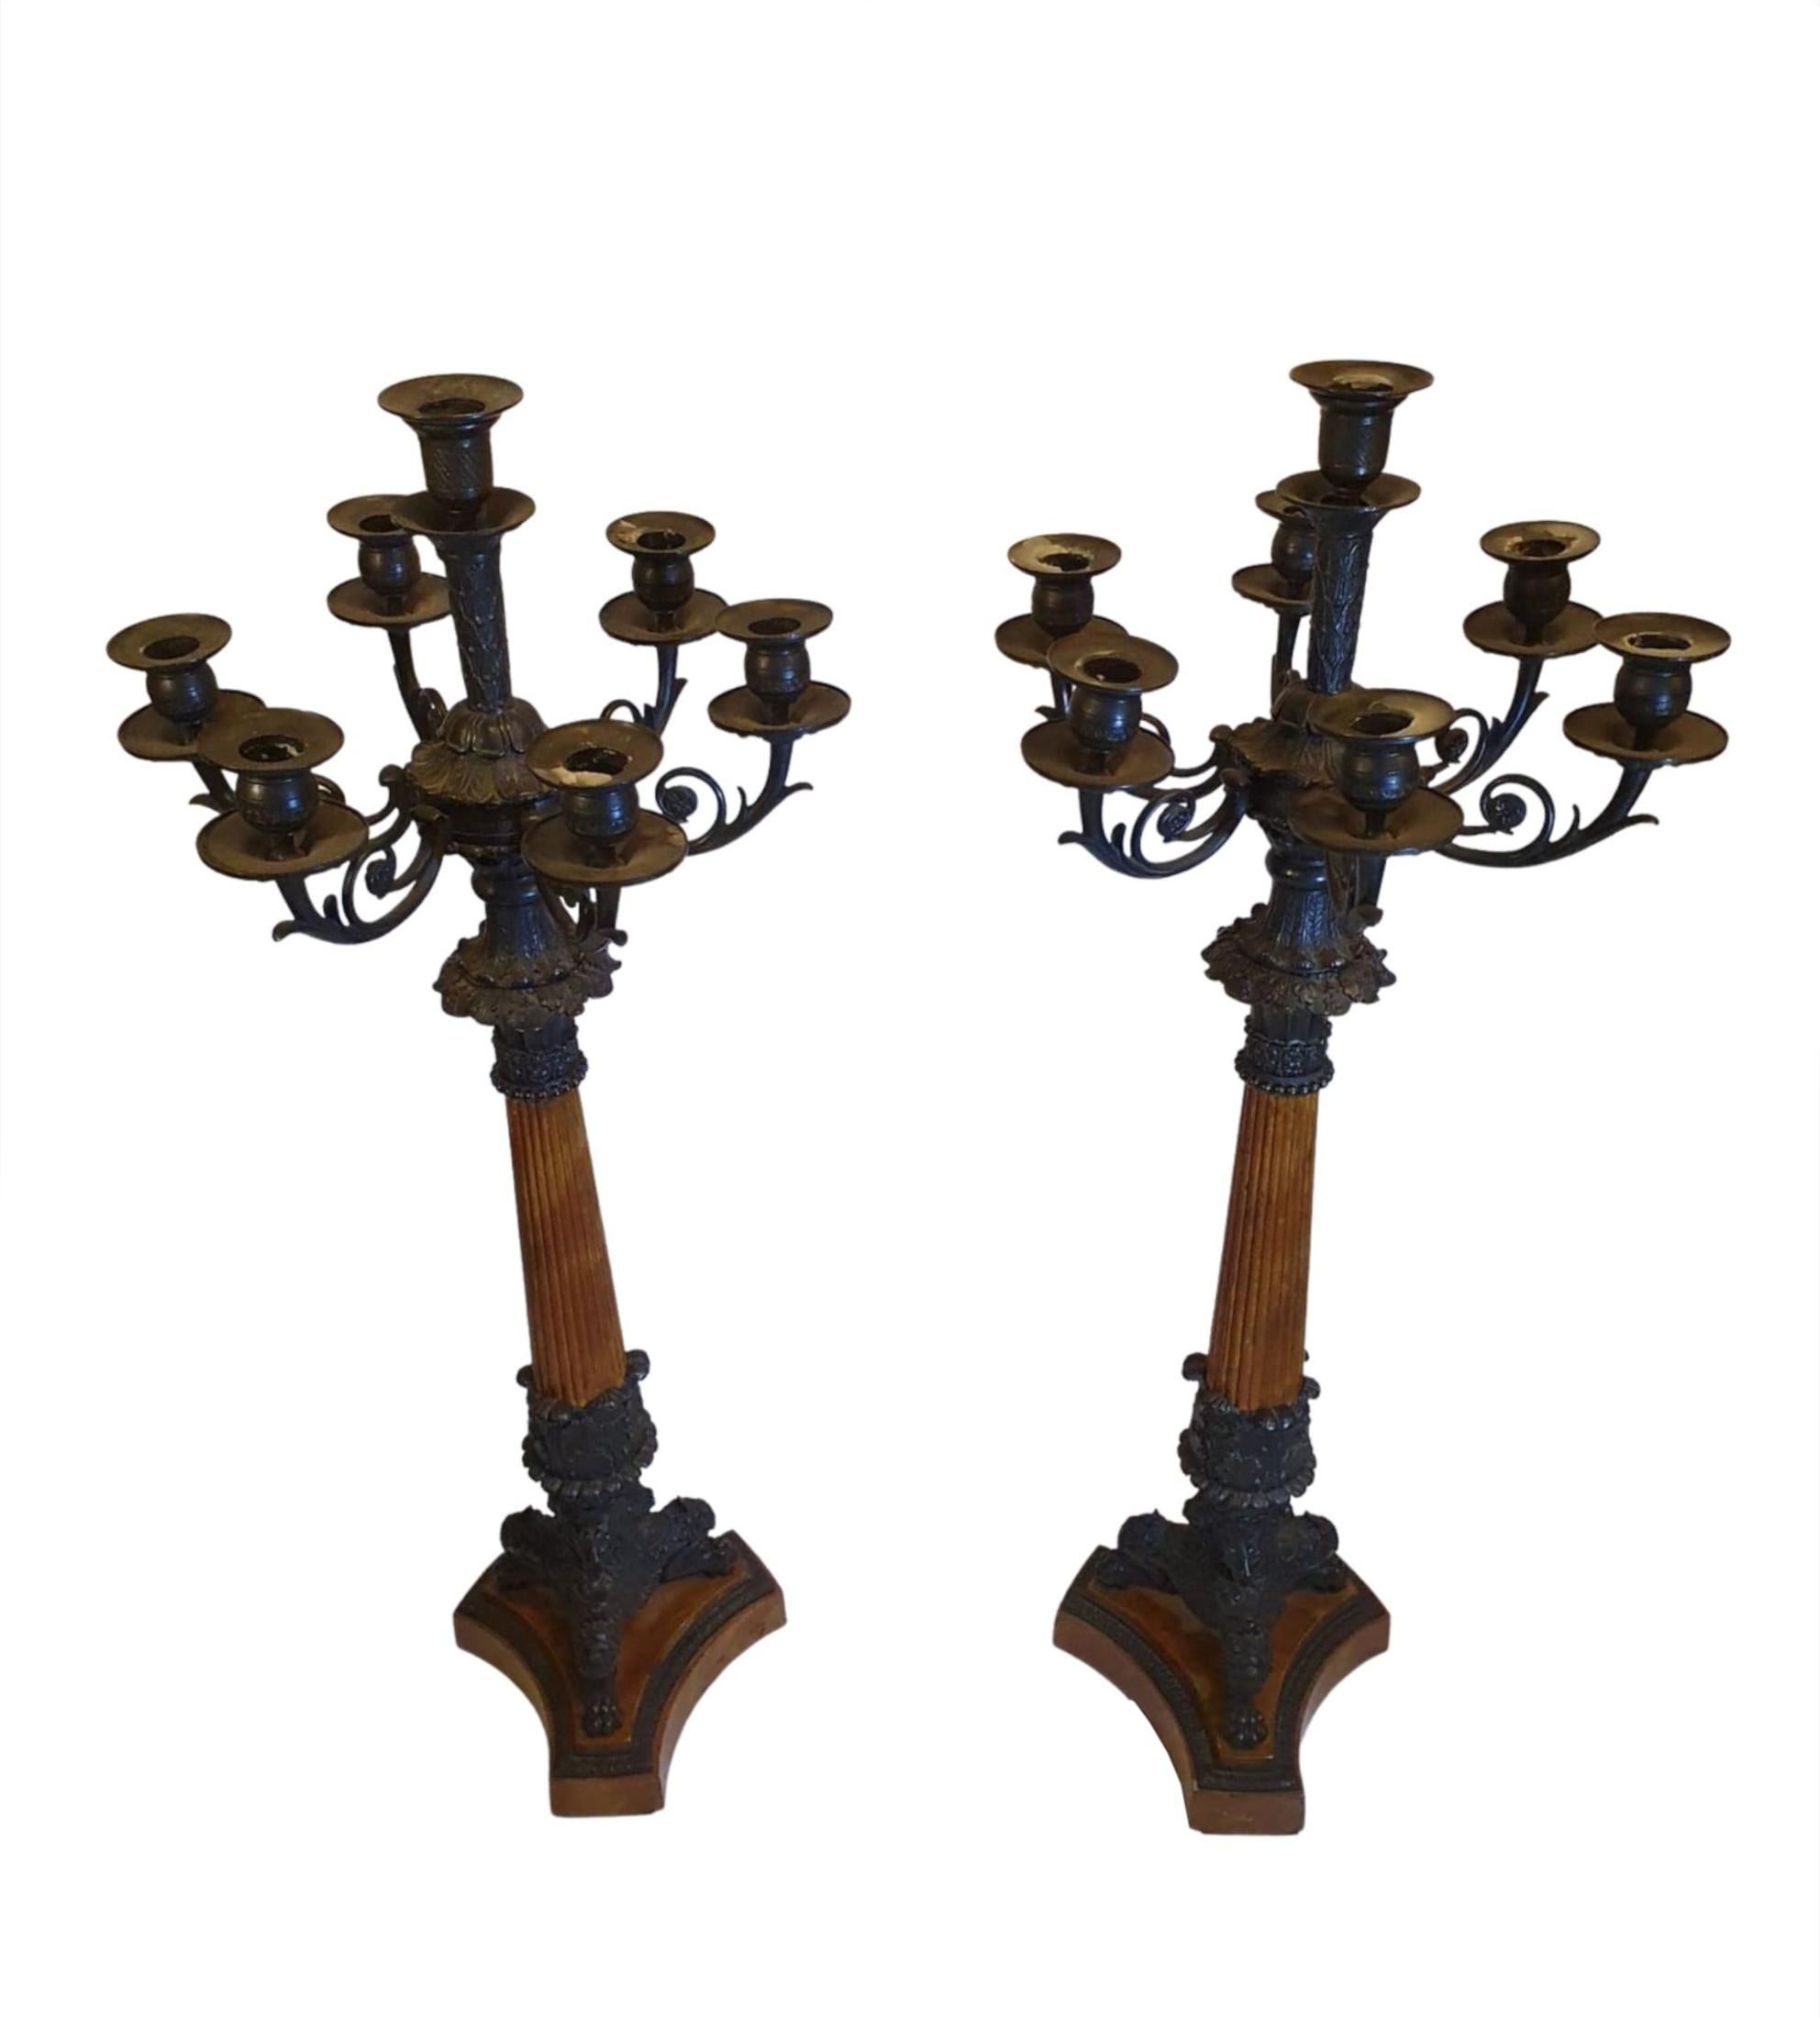 Ein seltenes und schönes Paar Bronzekandelaber mit sieben Zweigen aus dem 19. Jahrhundert im Empire-Stil im Empire-Stil mit komplizierten Schnecken- und Blattmotiven. Der kannelierte Säulenstiel steht auf dreiförmigen Tatzenfuß und endet auf einem